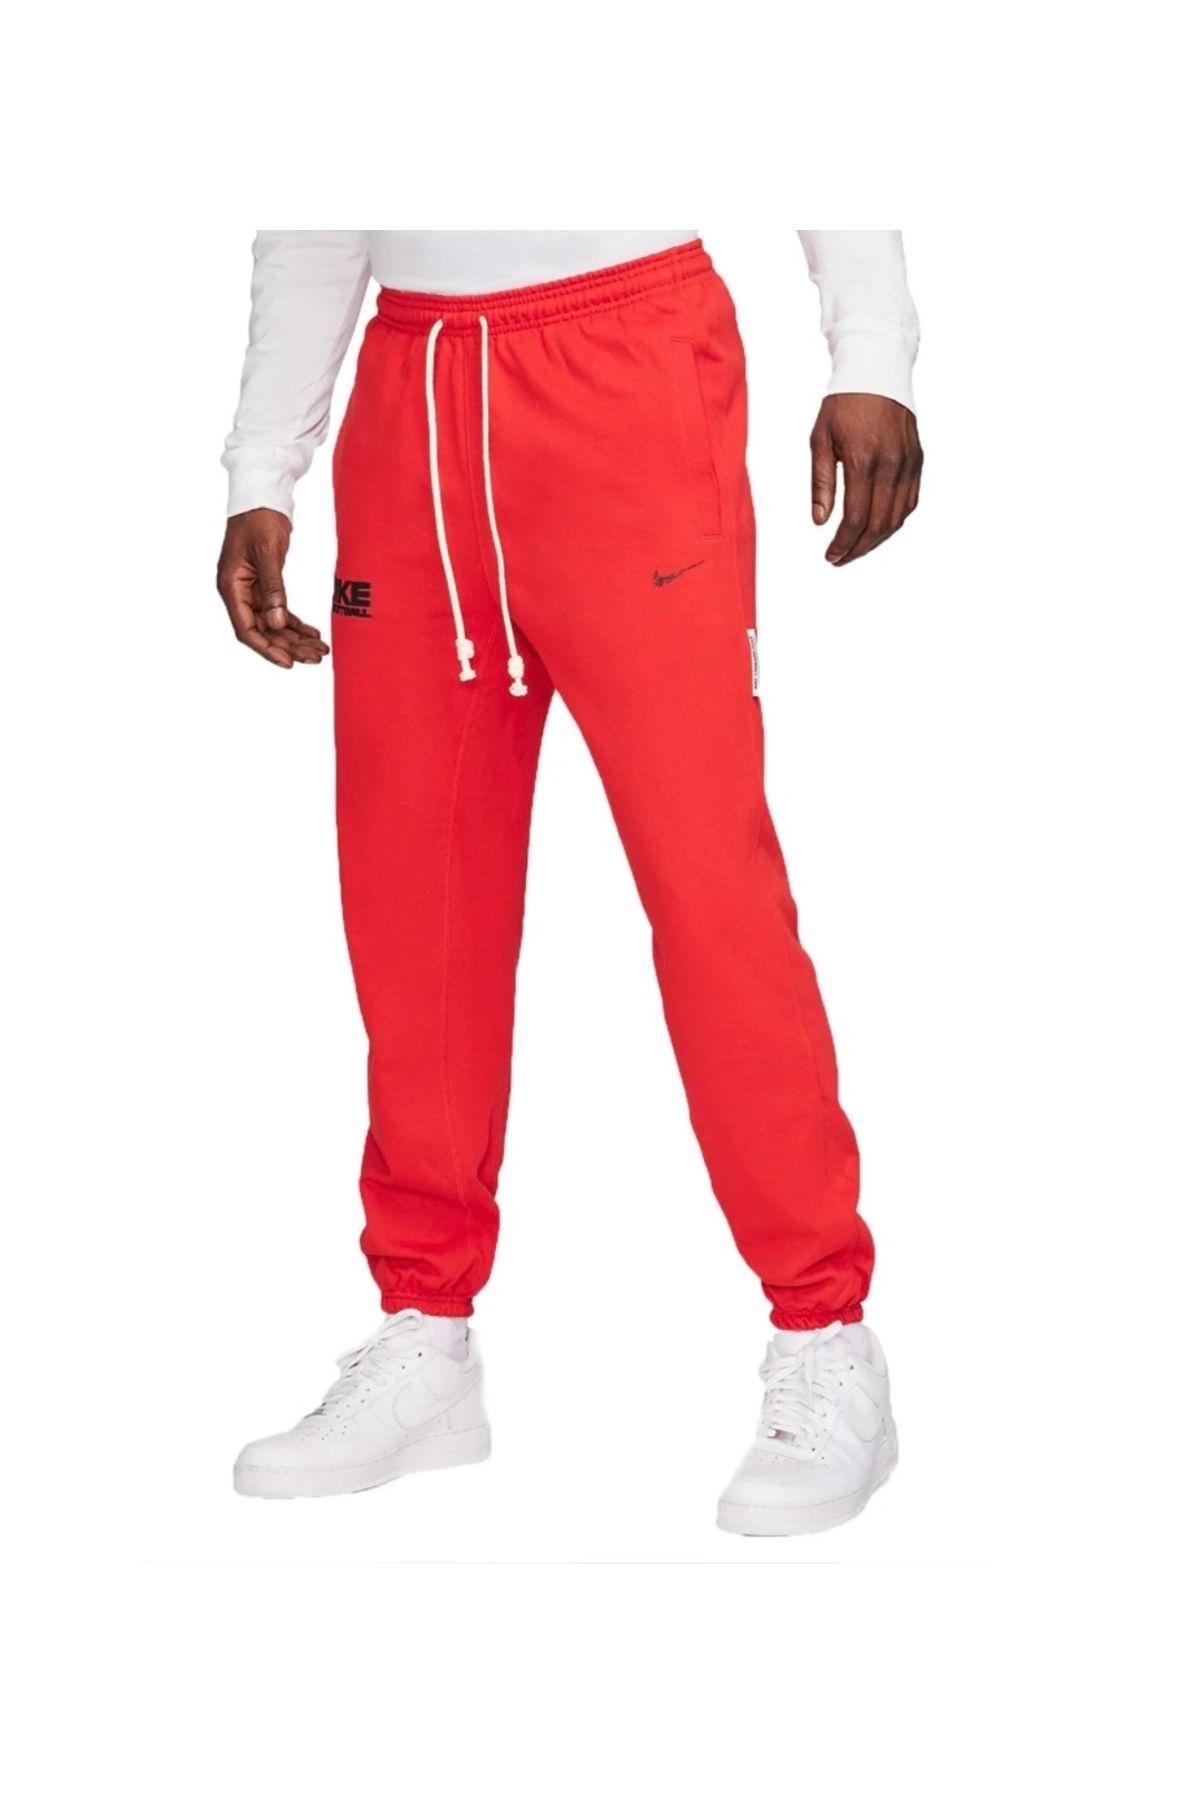 Nike Dri-Fit Standard Issue Kırmızı Erkek Basketbol Eşofman Altı